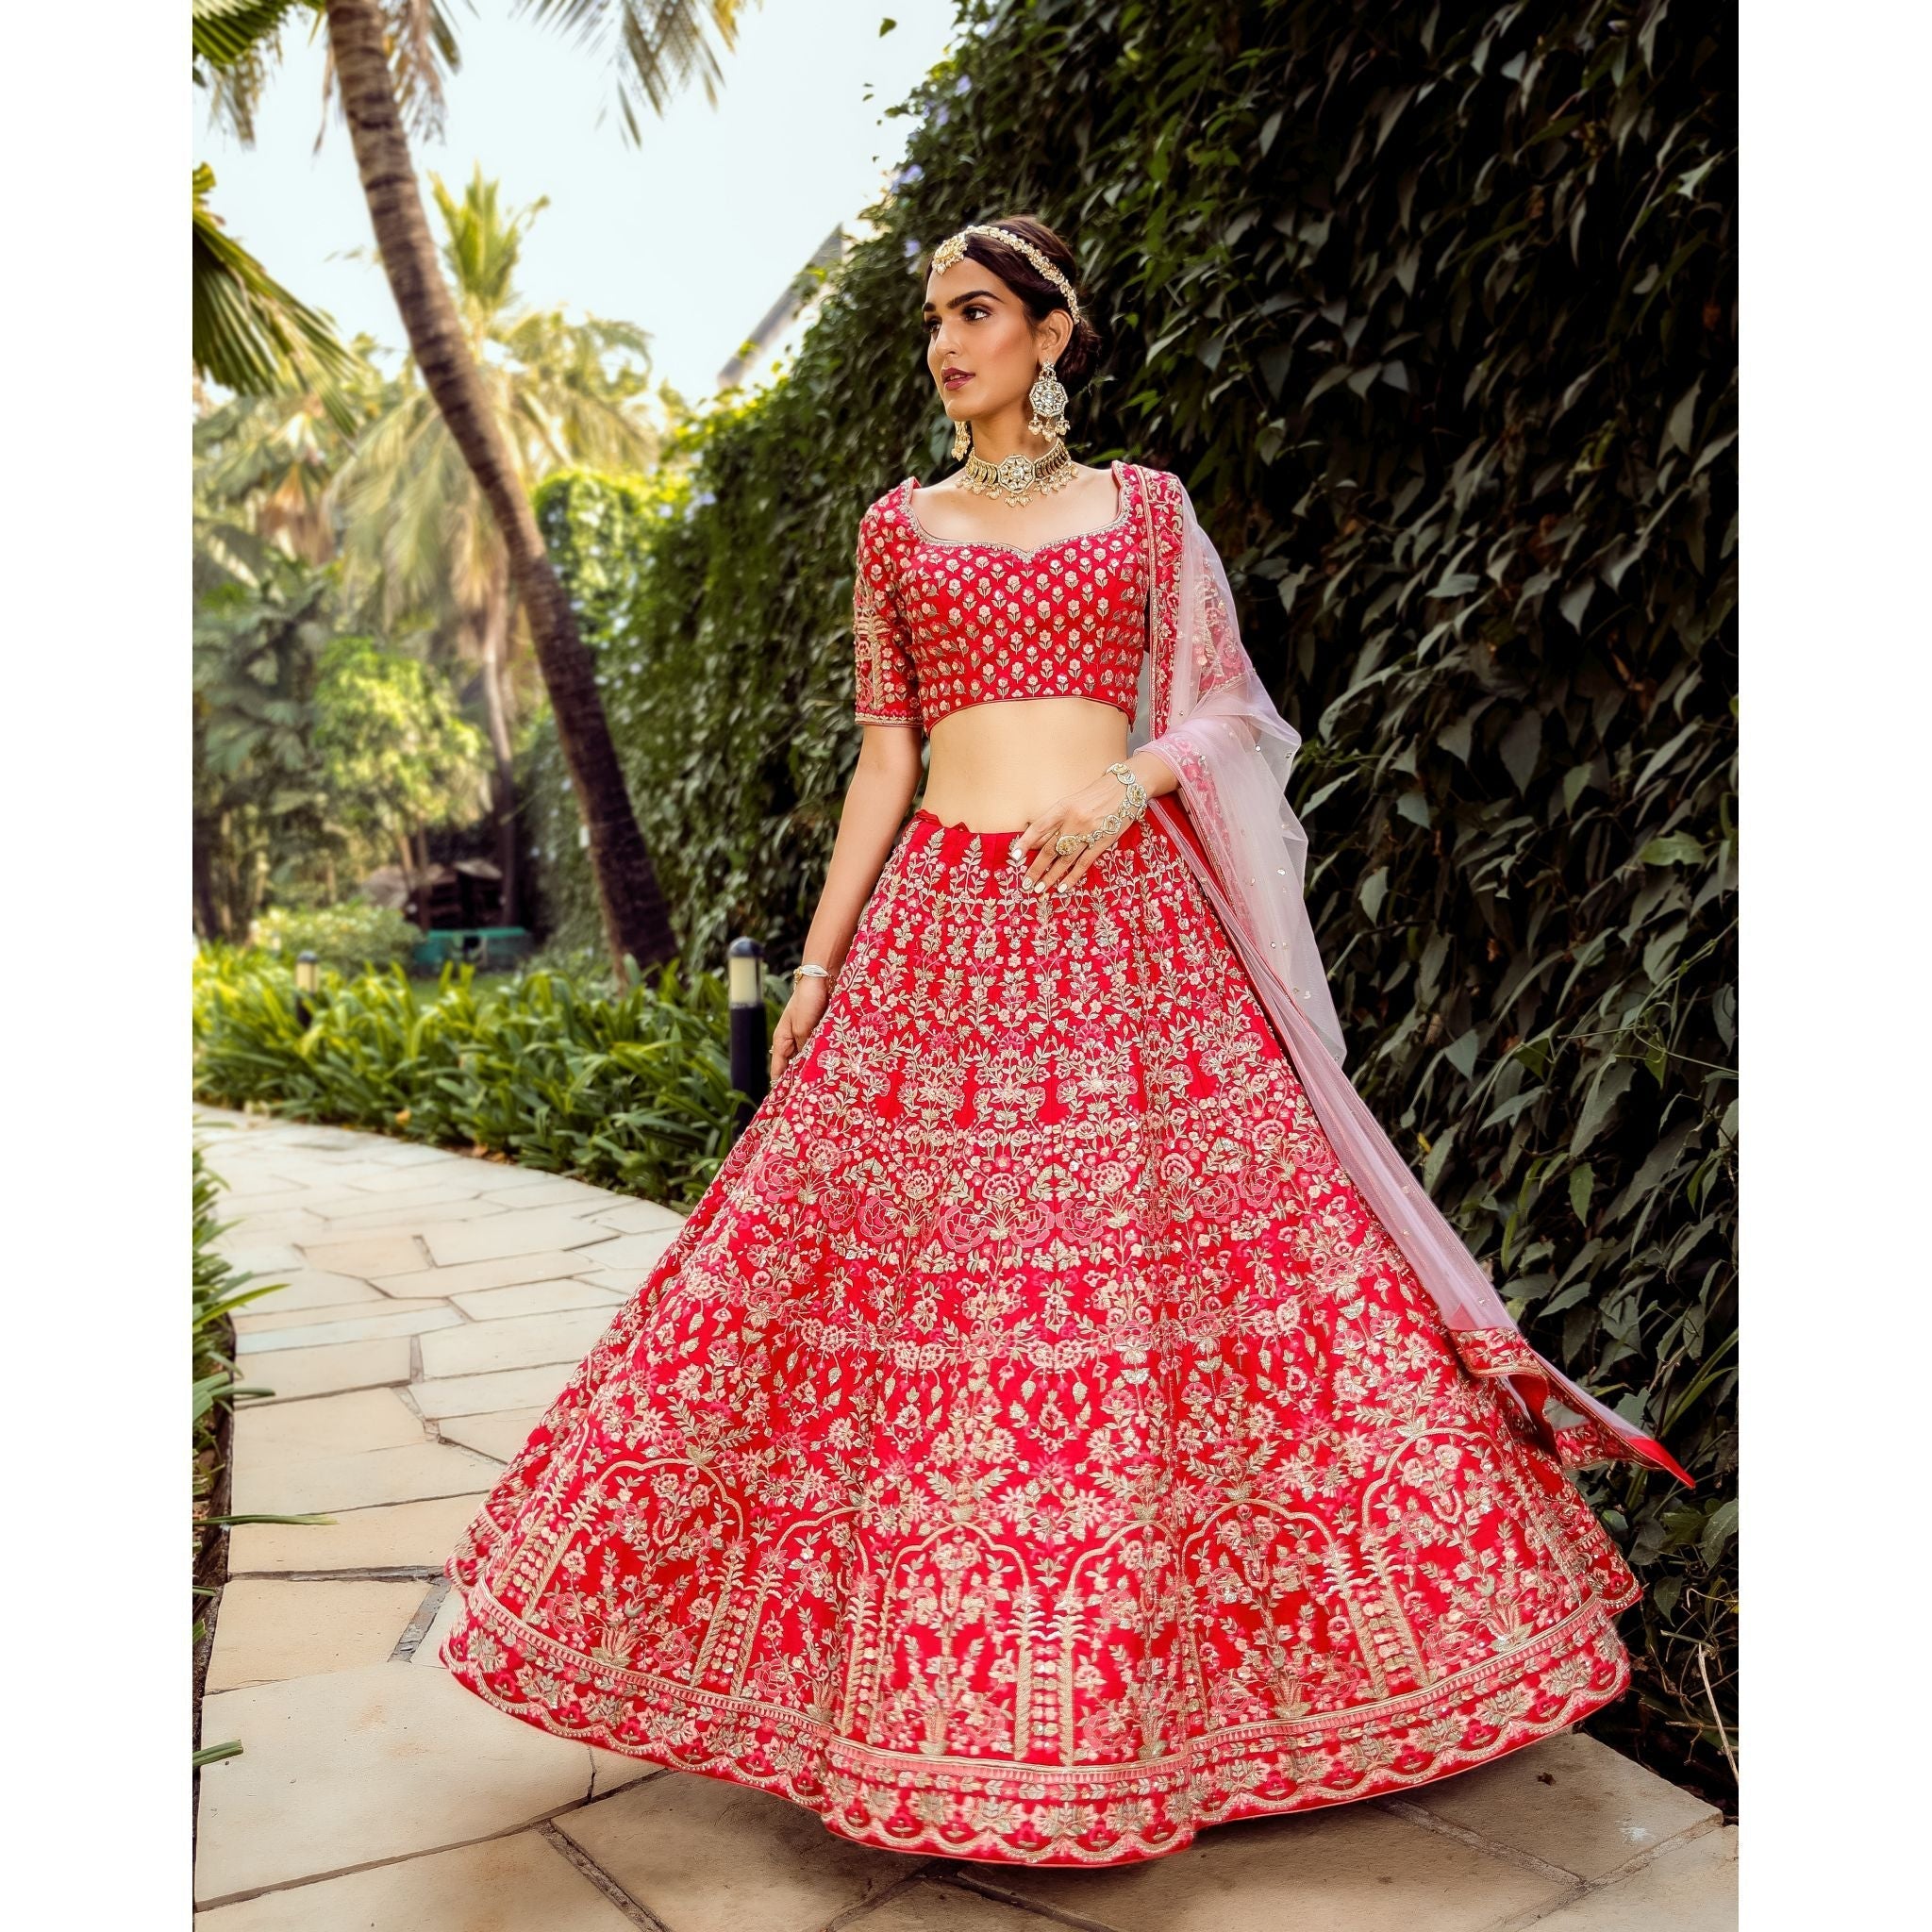 Scarlet Mughal Lehenga Set - Indian Designer Bridal Wedding Outfit